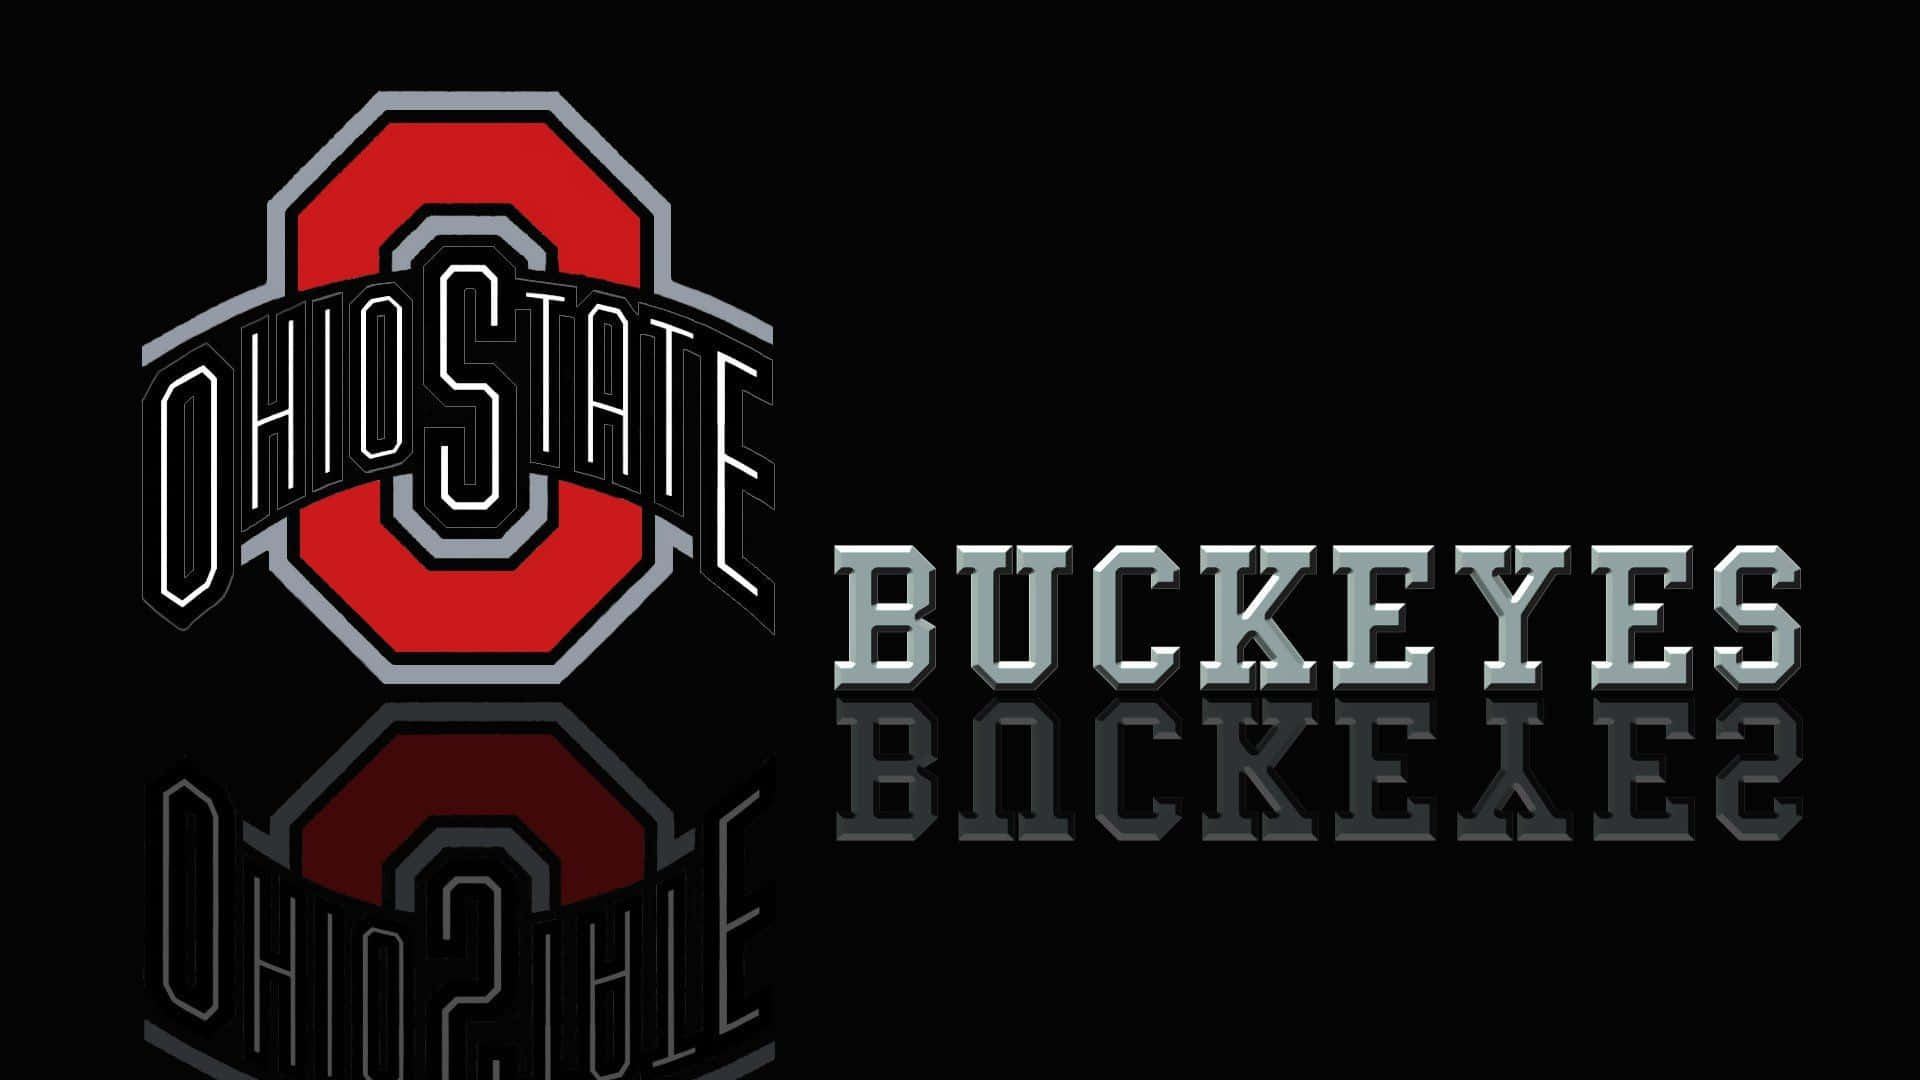 Logotipodos Ohio State Buckeyes Em Um Fundo Preto. Papel de Parede